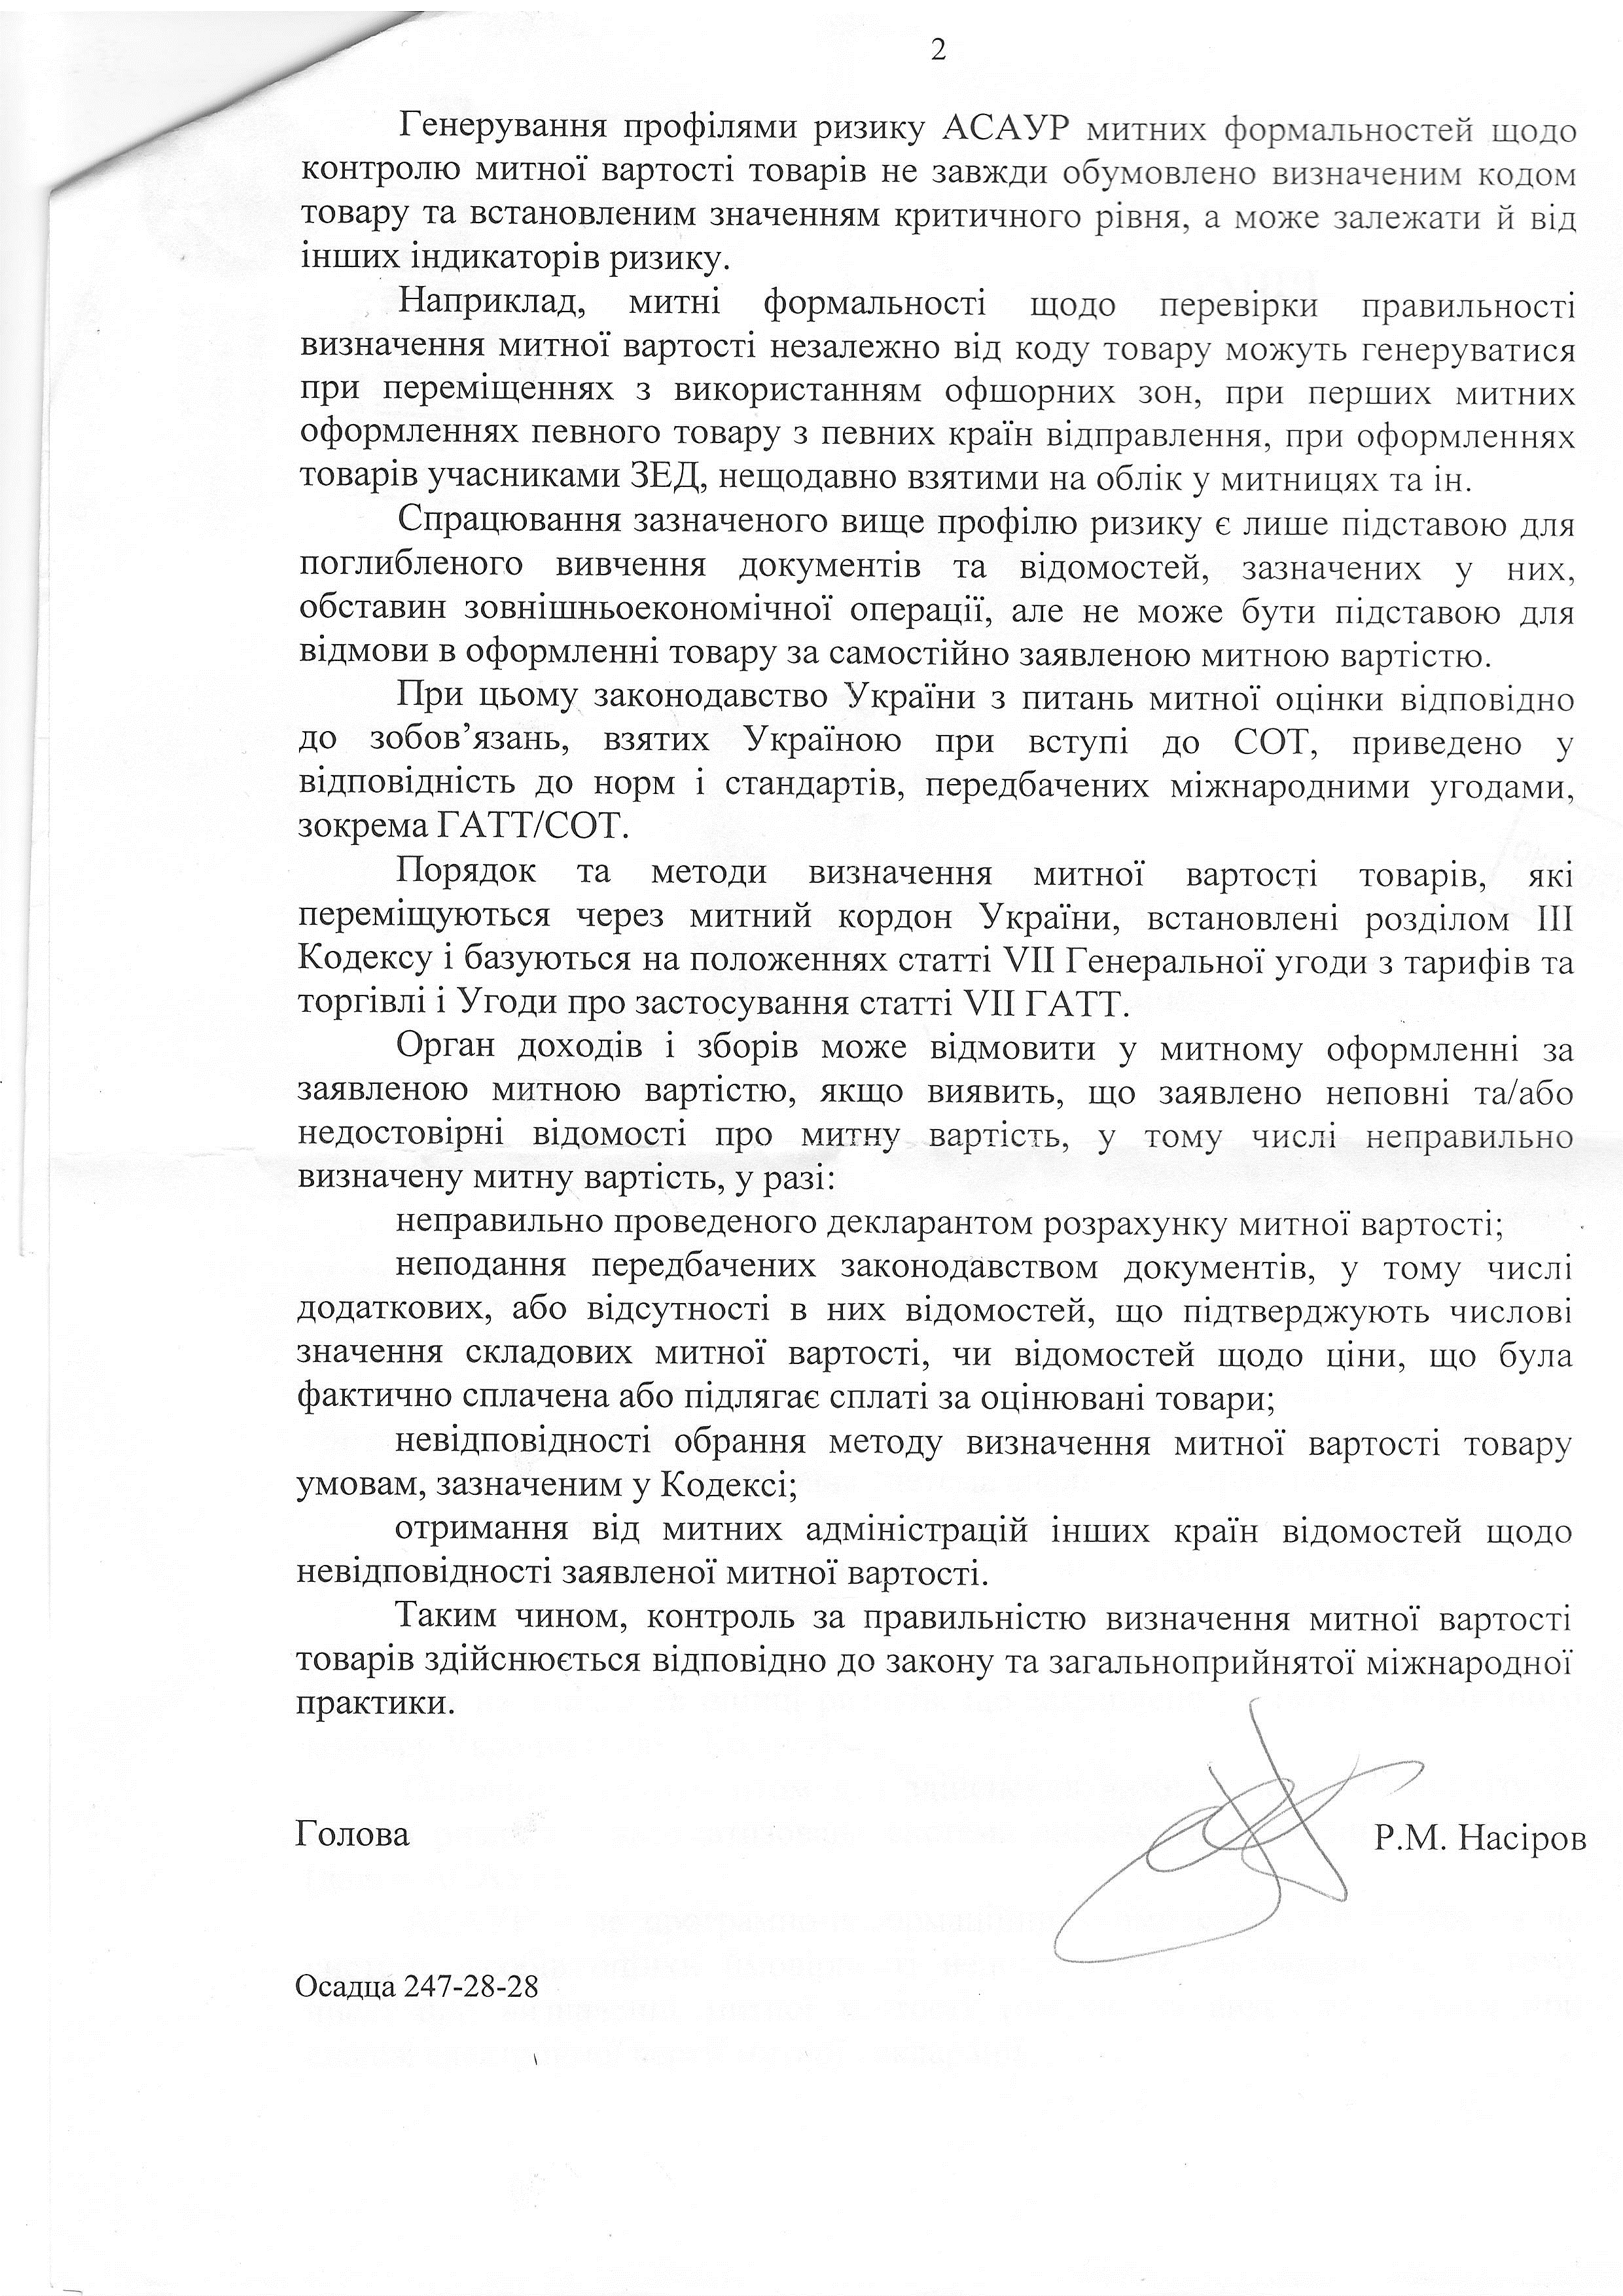 Лист Державної фіскальної служби України від 31 грудня 2015 року